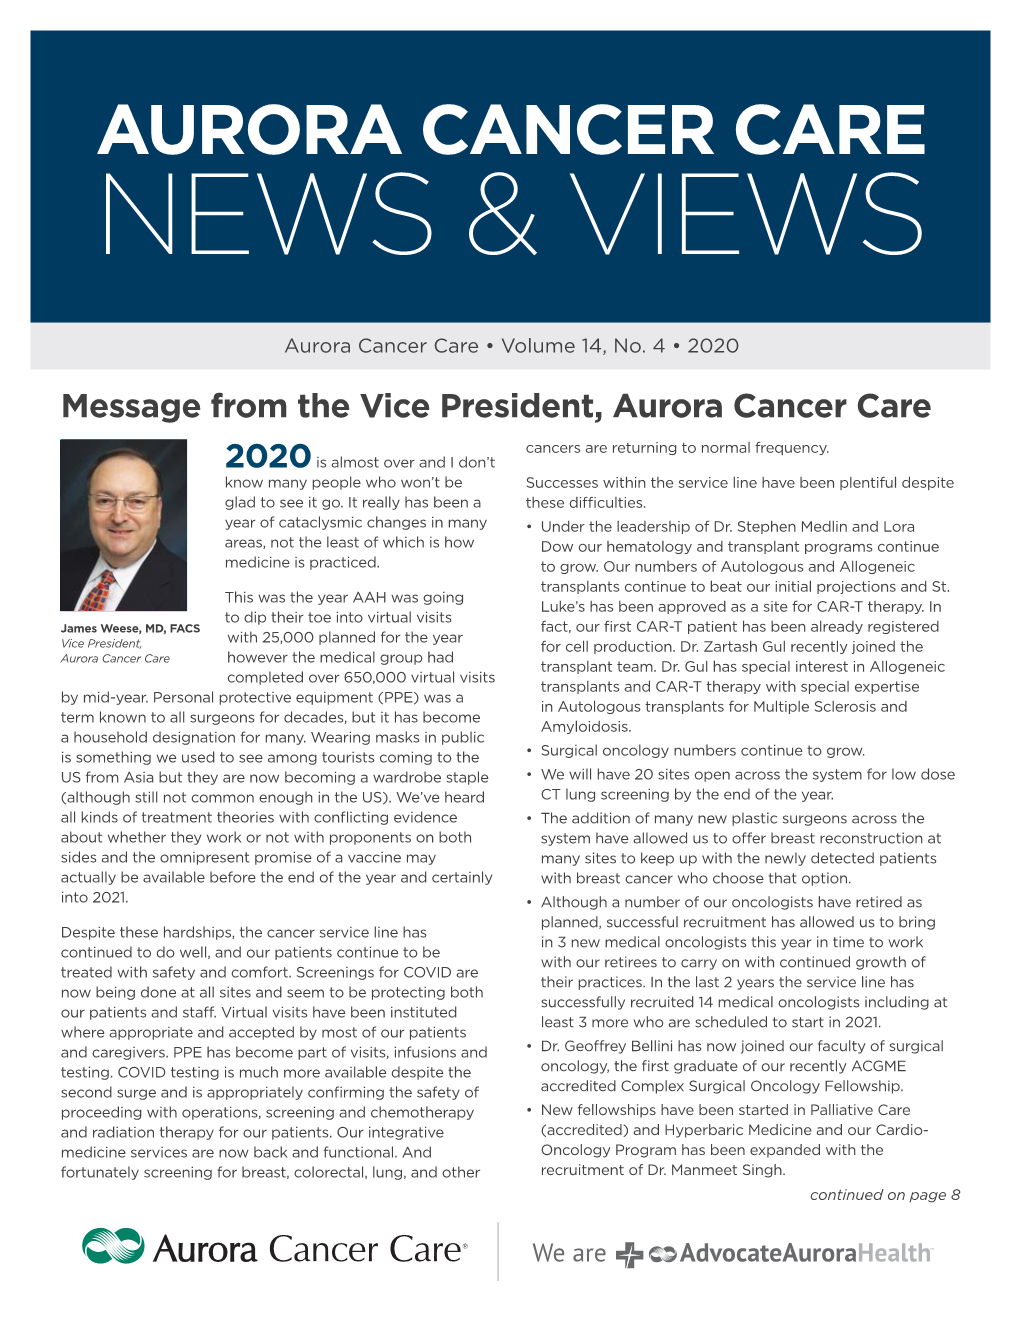 Cancer Care News & Views, Winter 2020